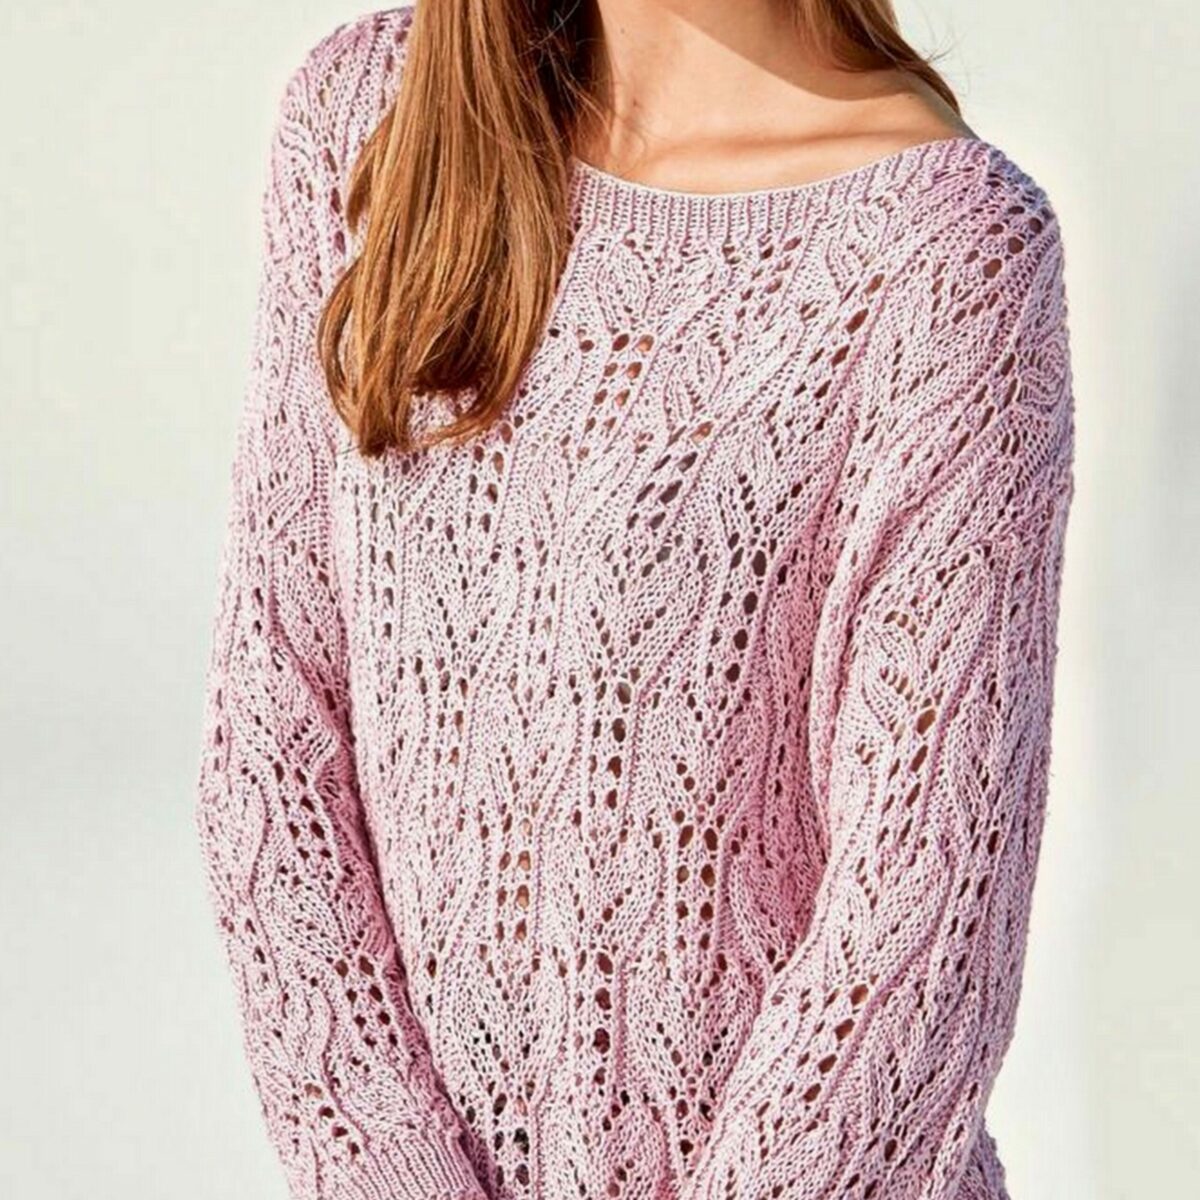 Сиренево-розовый пуловер спицами